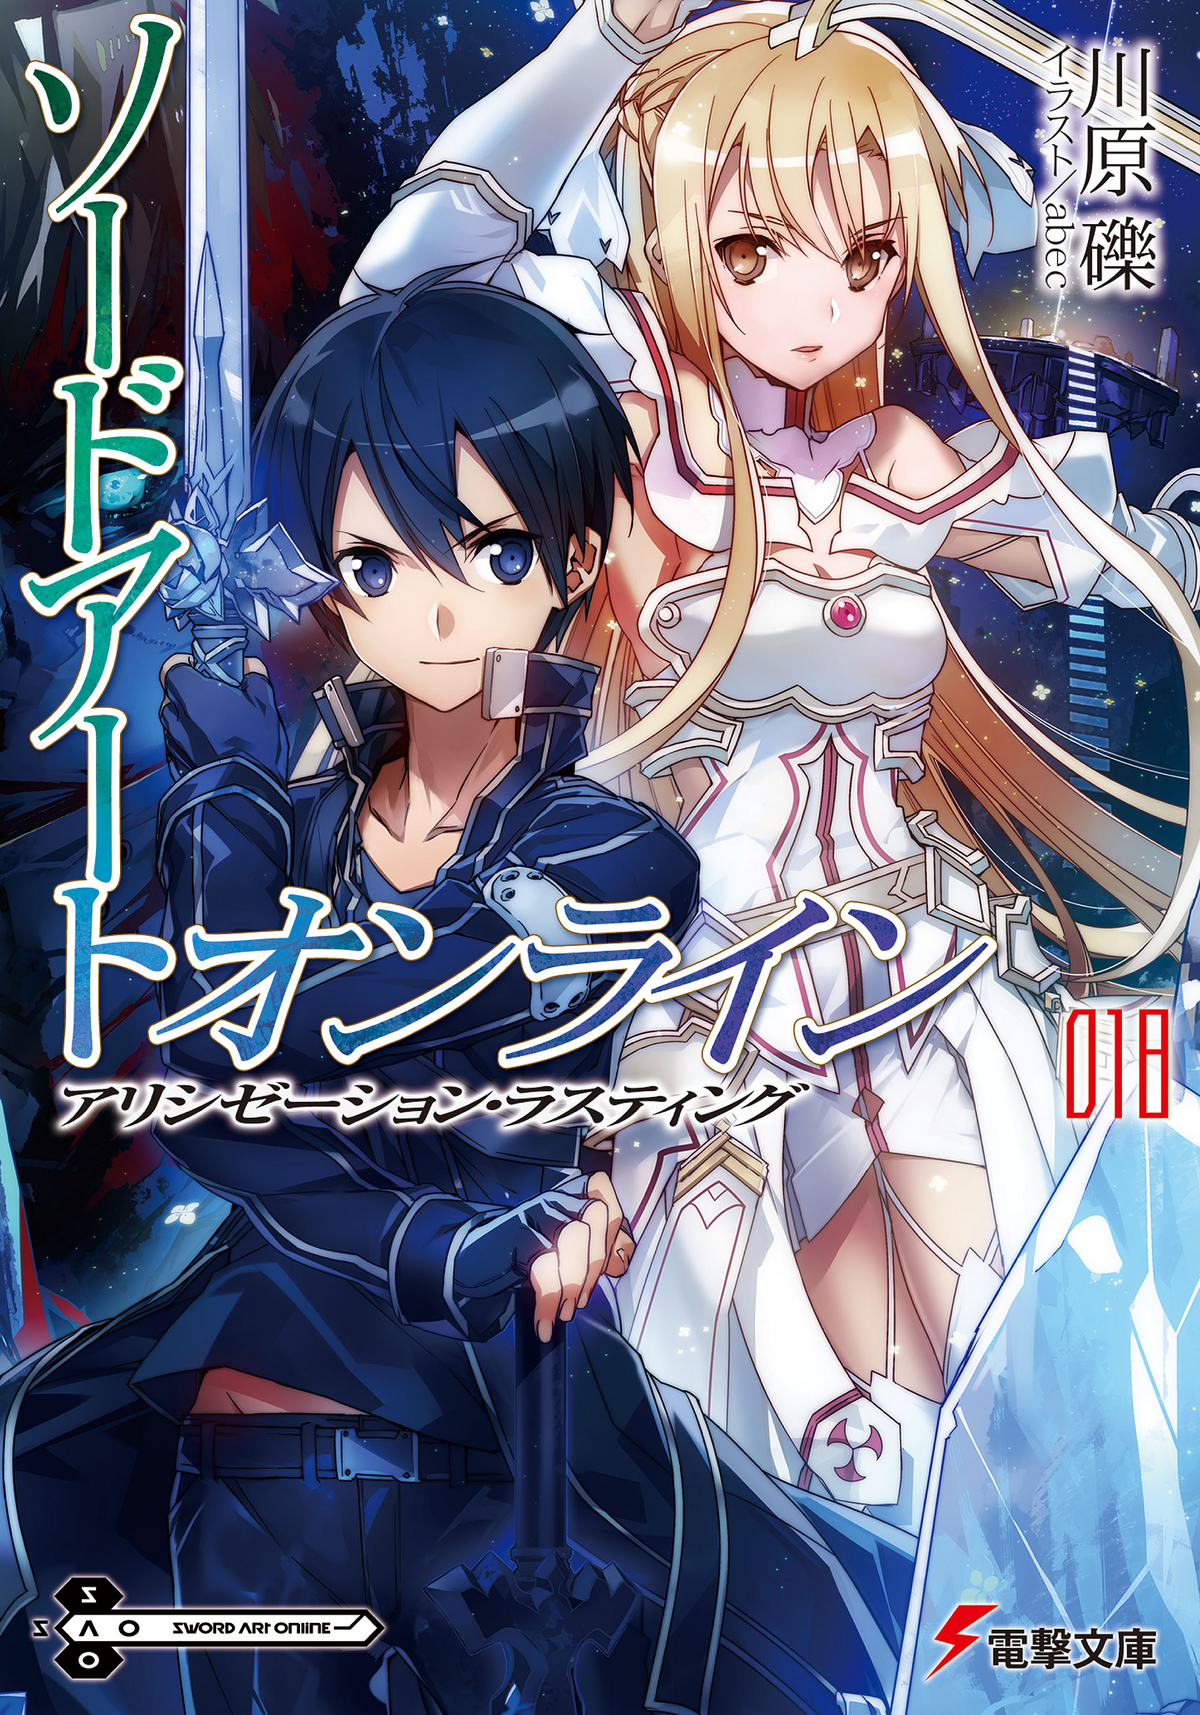 Sword Art Online Light Novel Volume 08